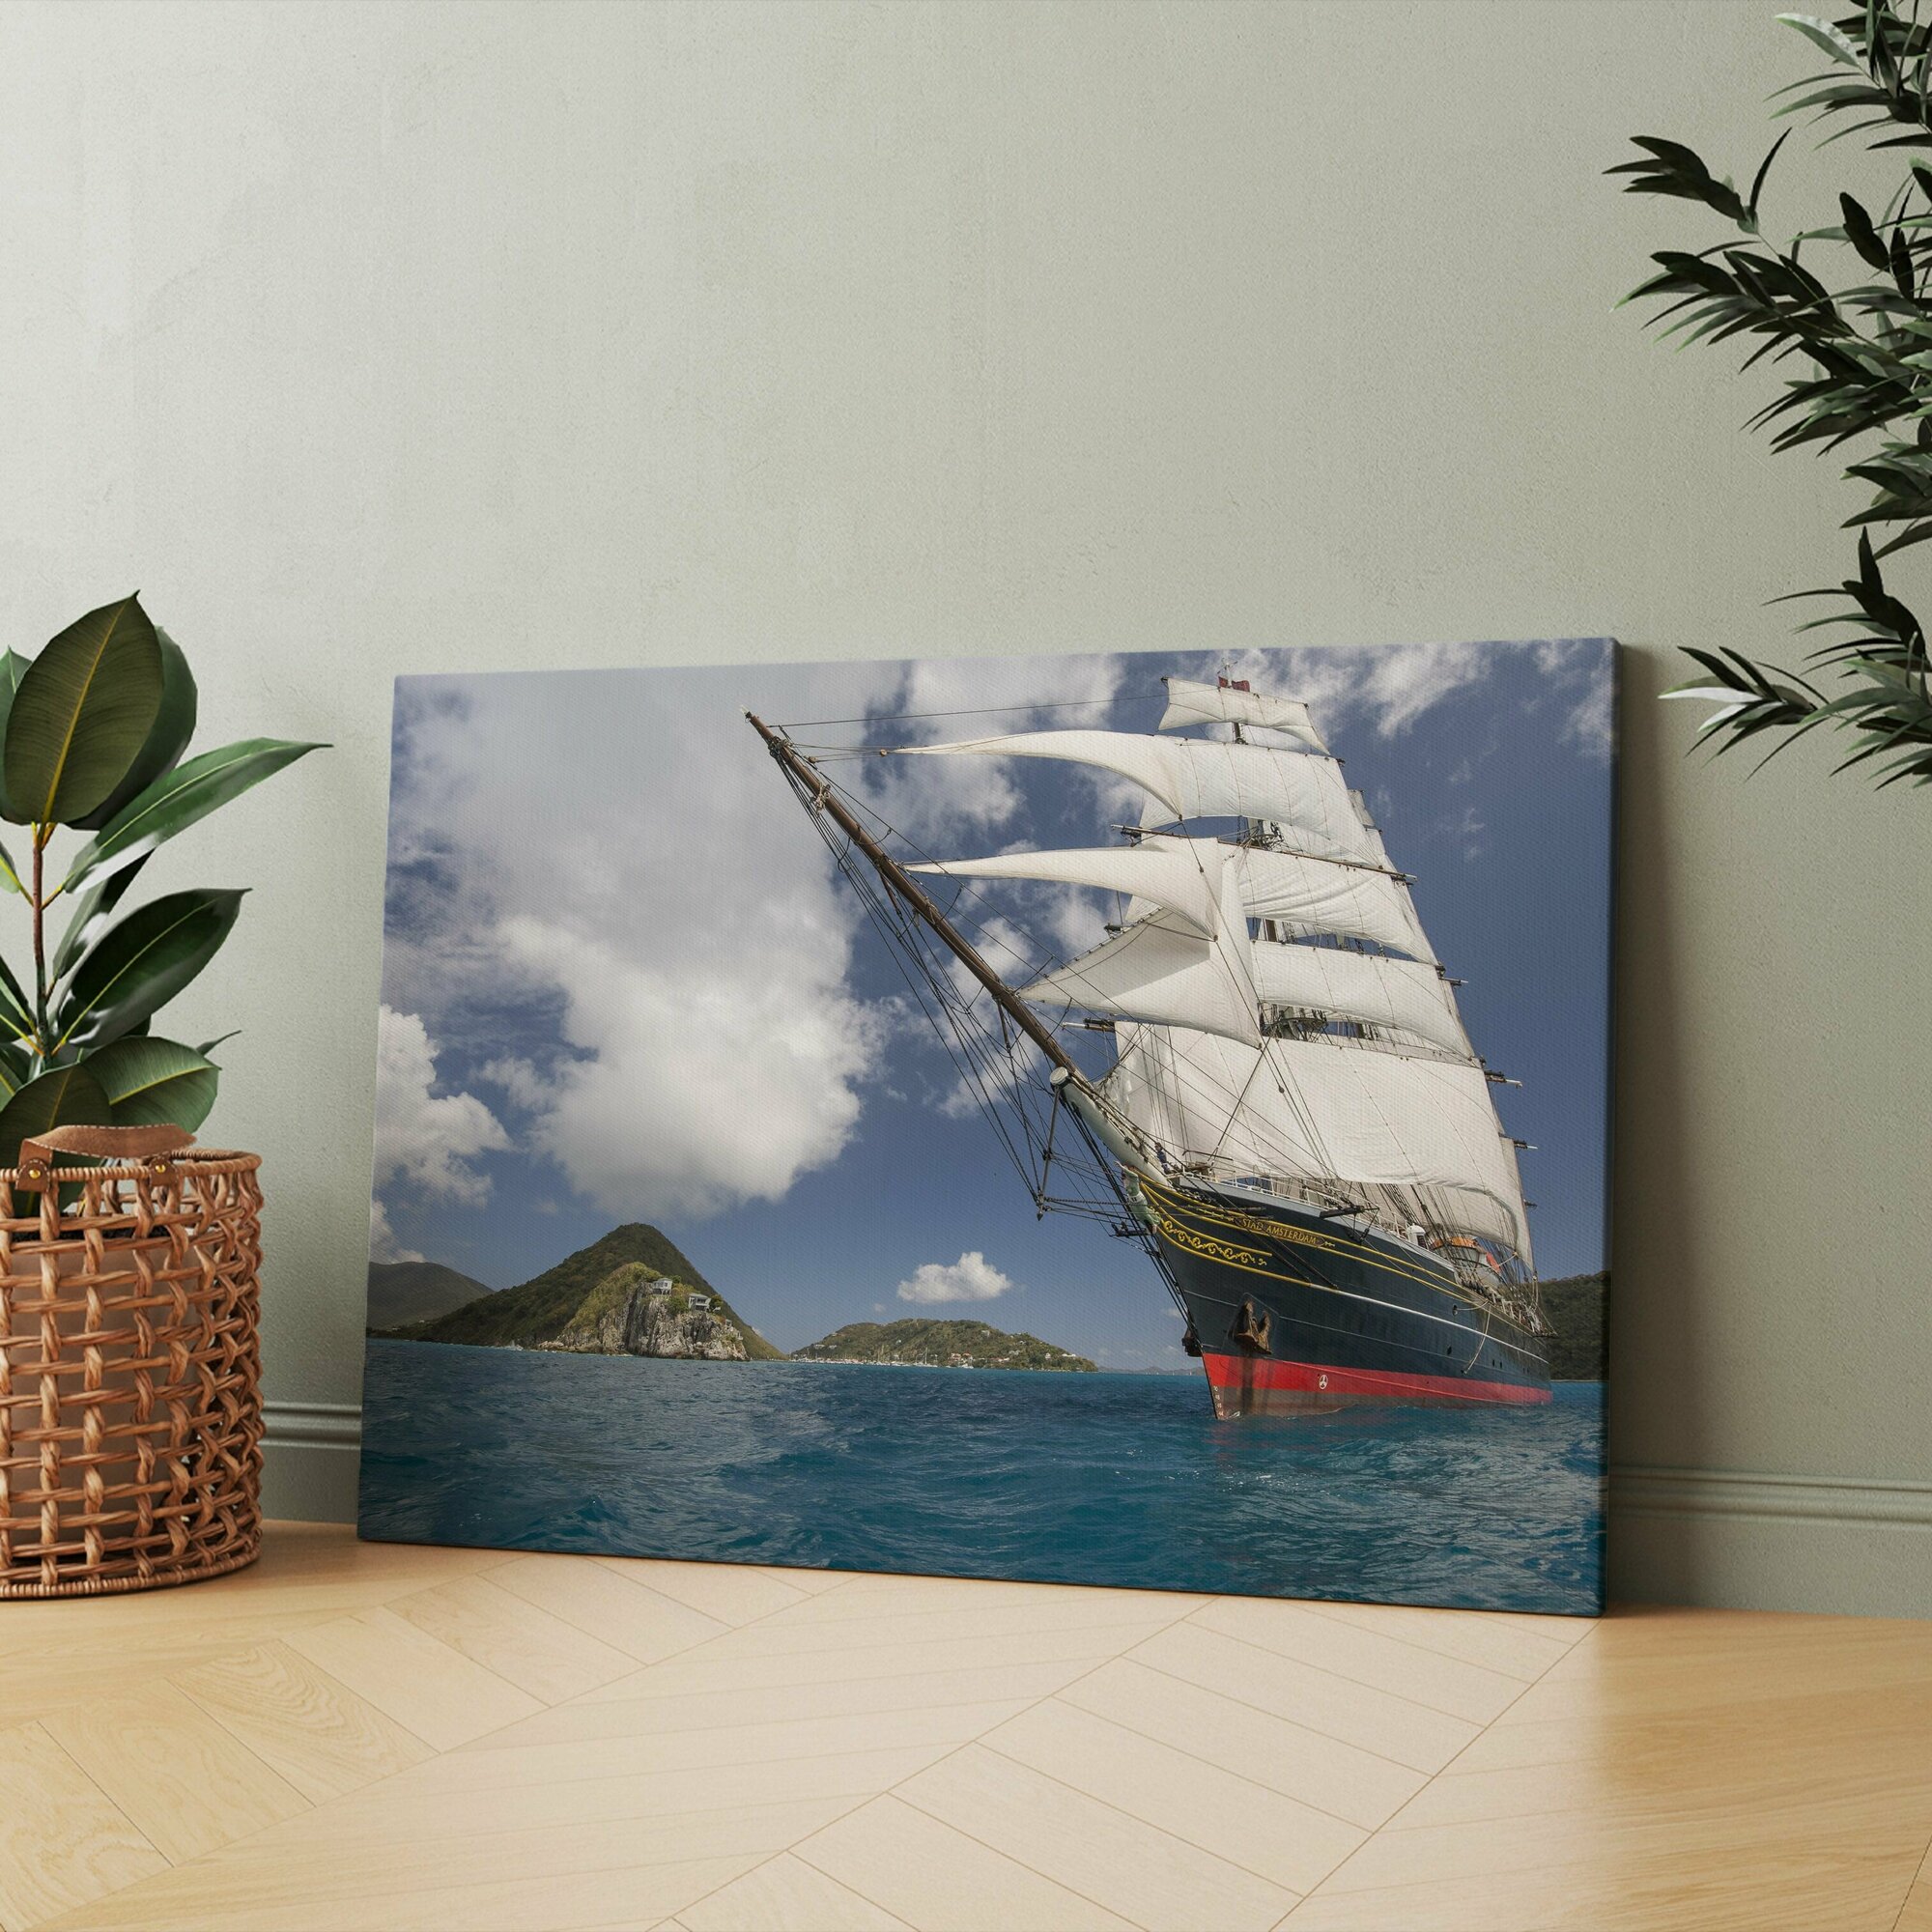 Картина на холсте (баркентина корабль парусный роял клипер в море с белыми) 60x80 см/для интерьера/в комнату/на стену/в подарок